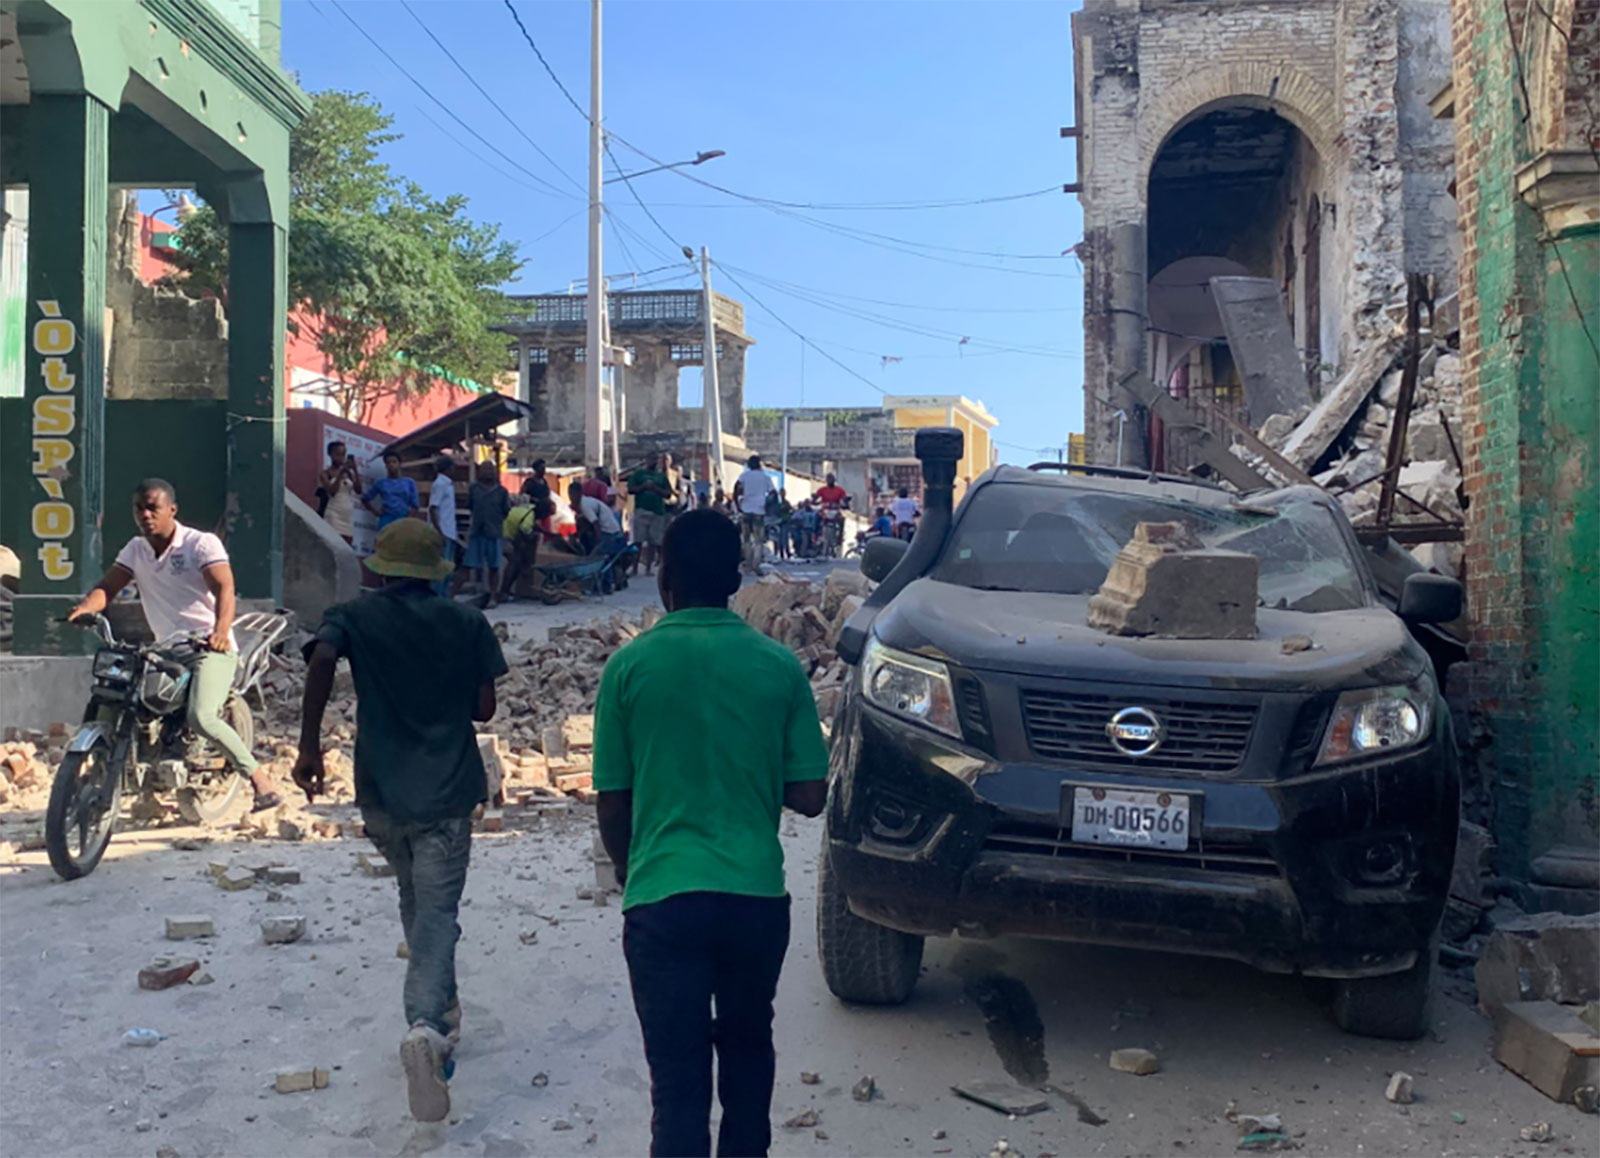 Earthquake strikes near Haiti